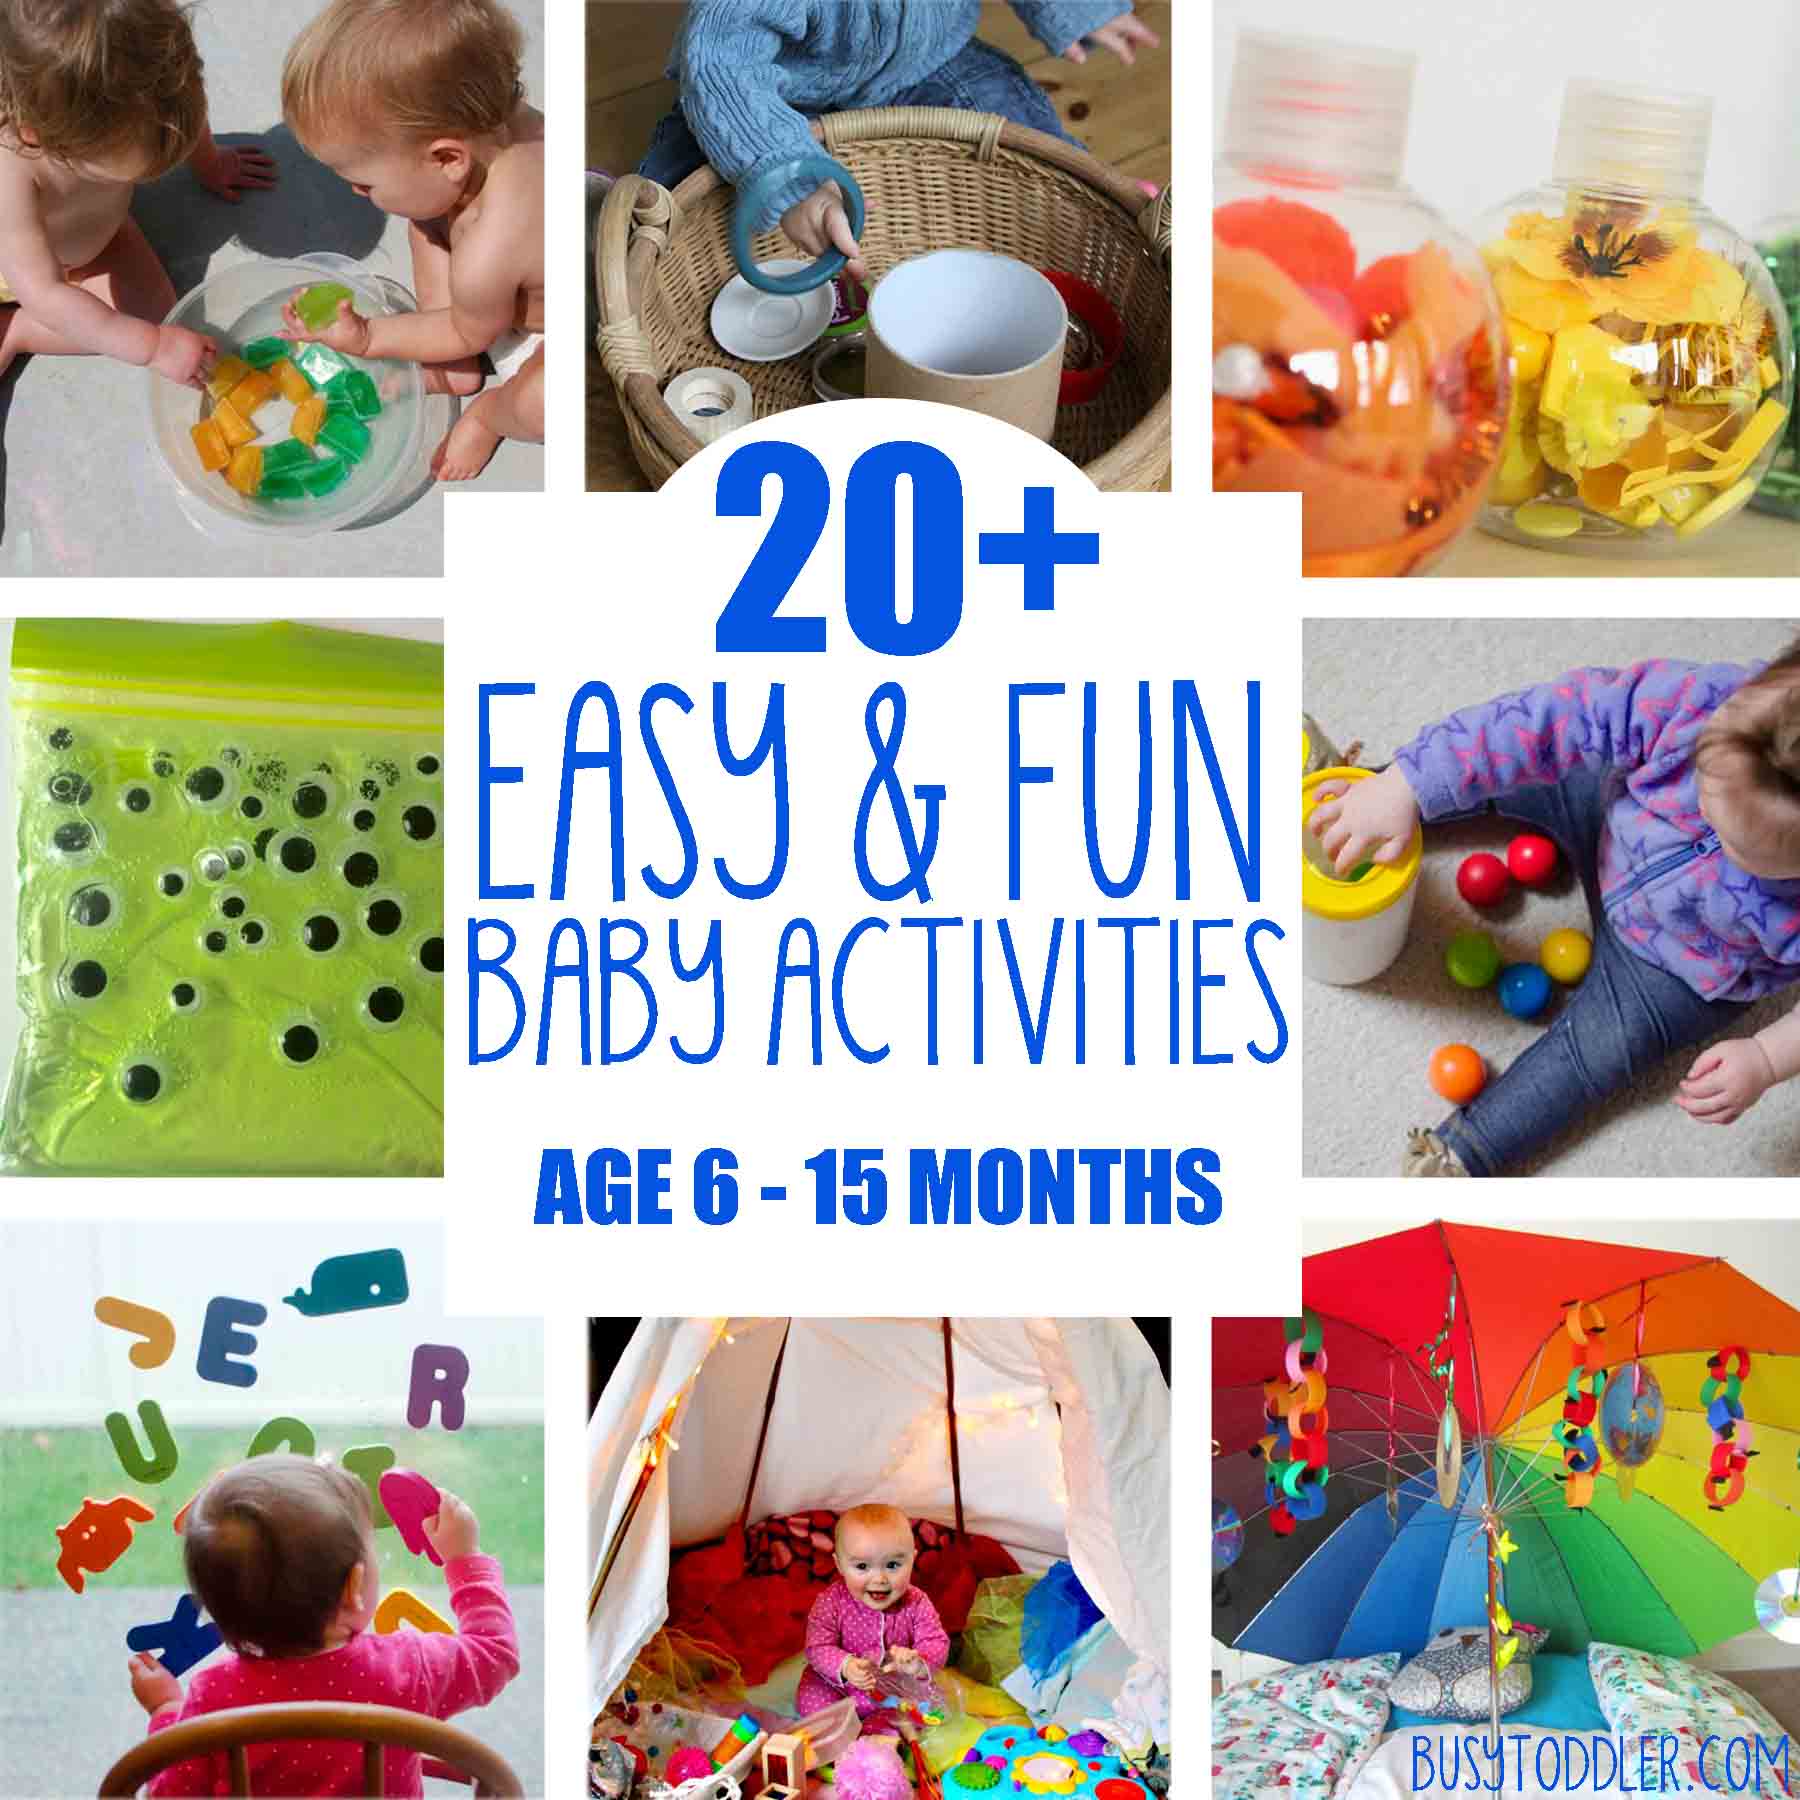 20+ Fun &  Easy Baby Activities